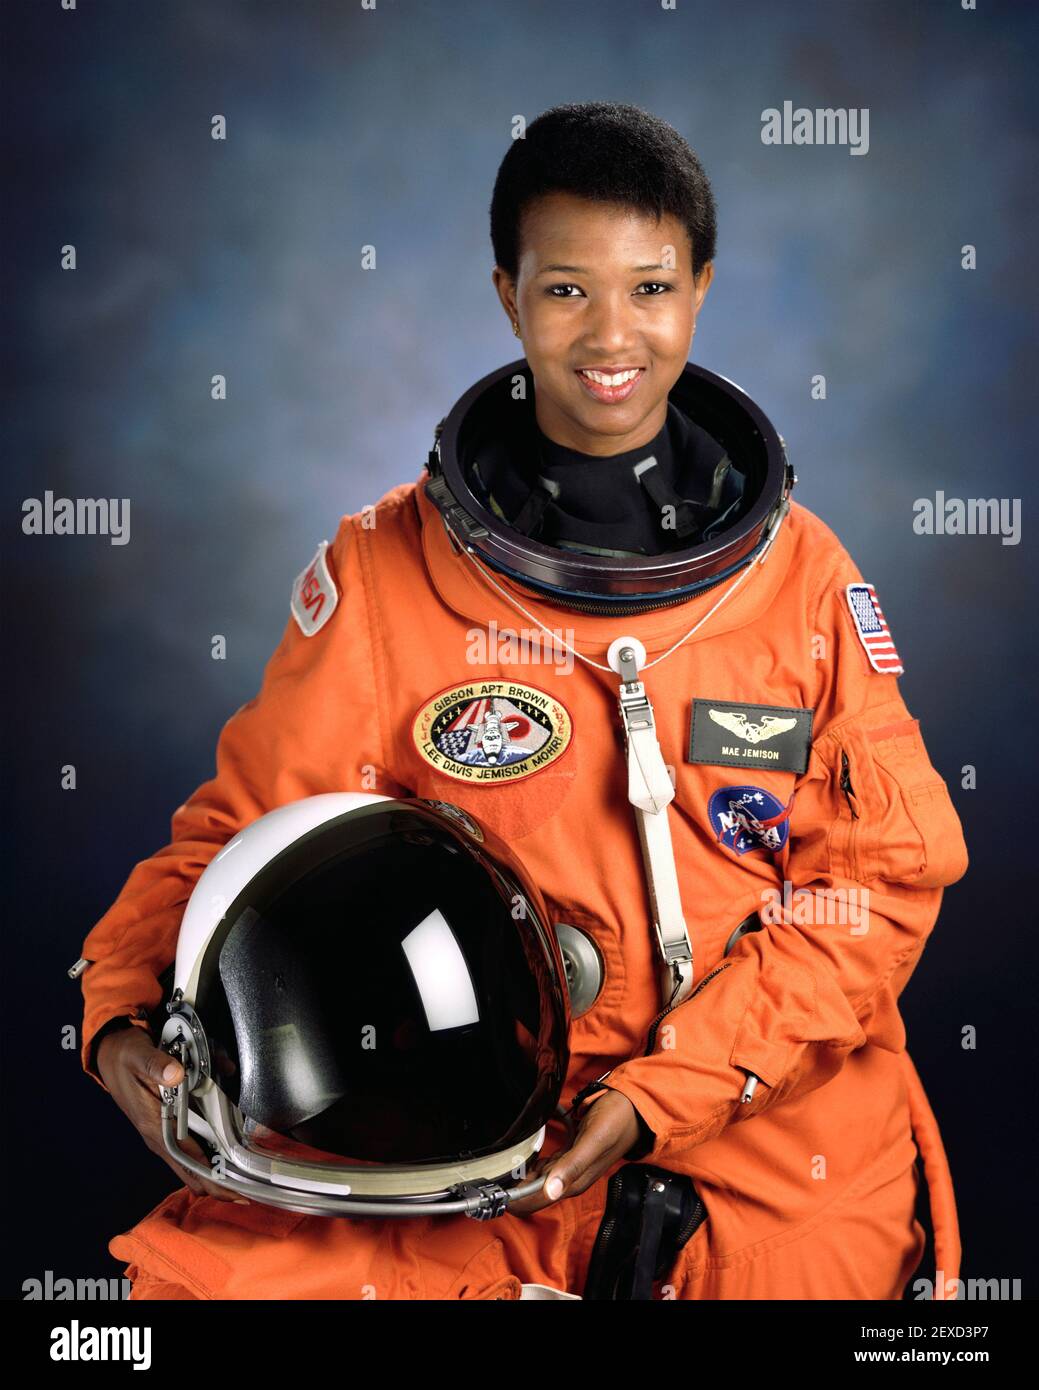 Mae Jemison. Portrait de l'astronaute de la NASA, Mae Carol Jemison (b. 1956), la première femme noire à voyager dans l'espace quand elle a servi comme spécialiste de mission à bord de la navette spatiale Endeavour en 1992. Photo publiée avec l'aimable autorisation de la NASA, 1992. Banque D'Images